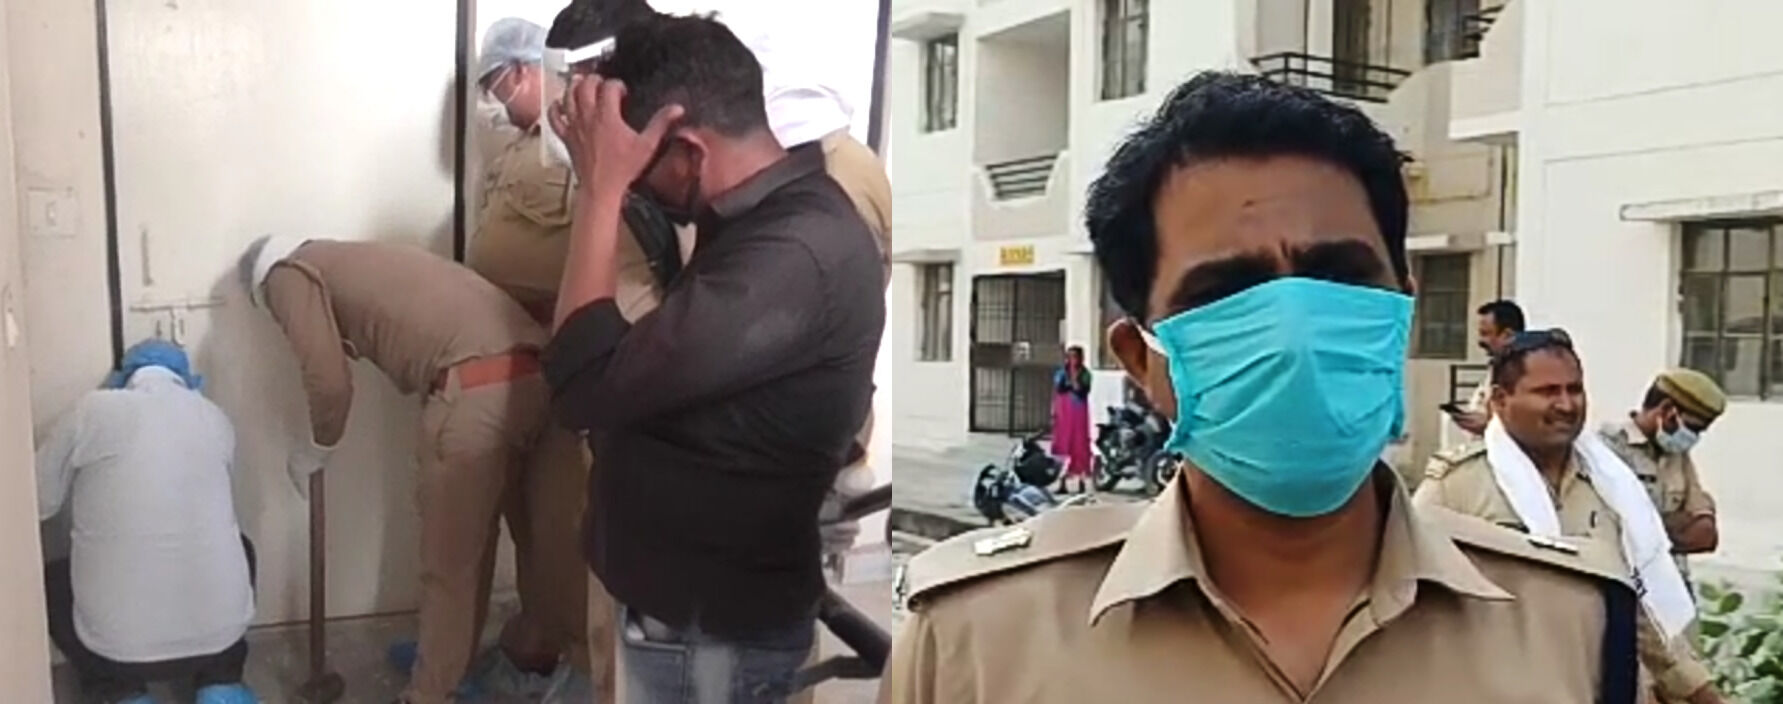 कानपुर : लॉकडाउन में फंदे से हफ्तों लटकती रहीं दो लड़कियां, फ्लैट से बदबू आने की सूचना पर पहुंची पुलिस